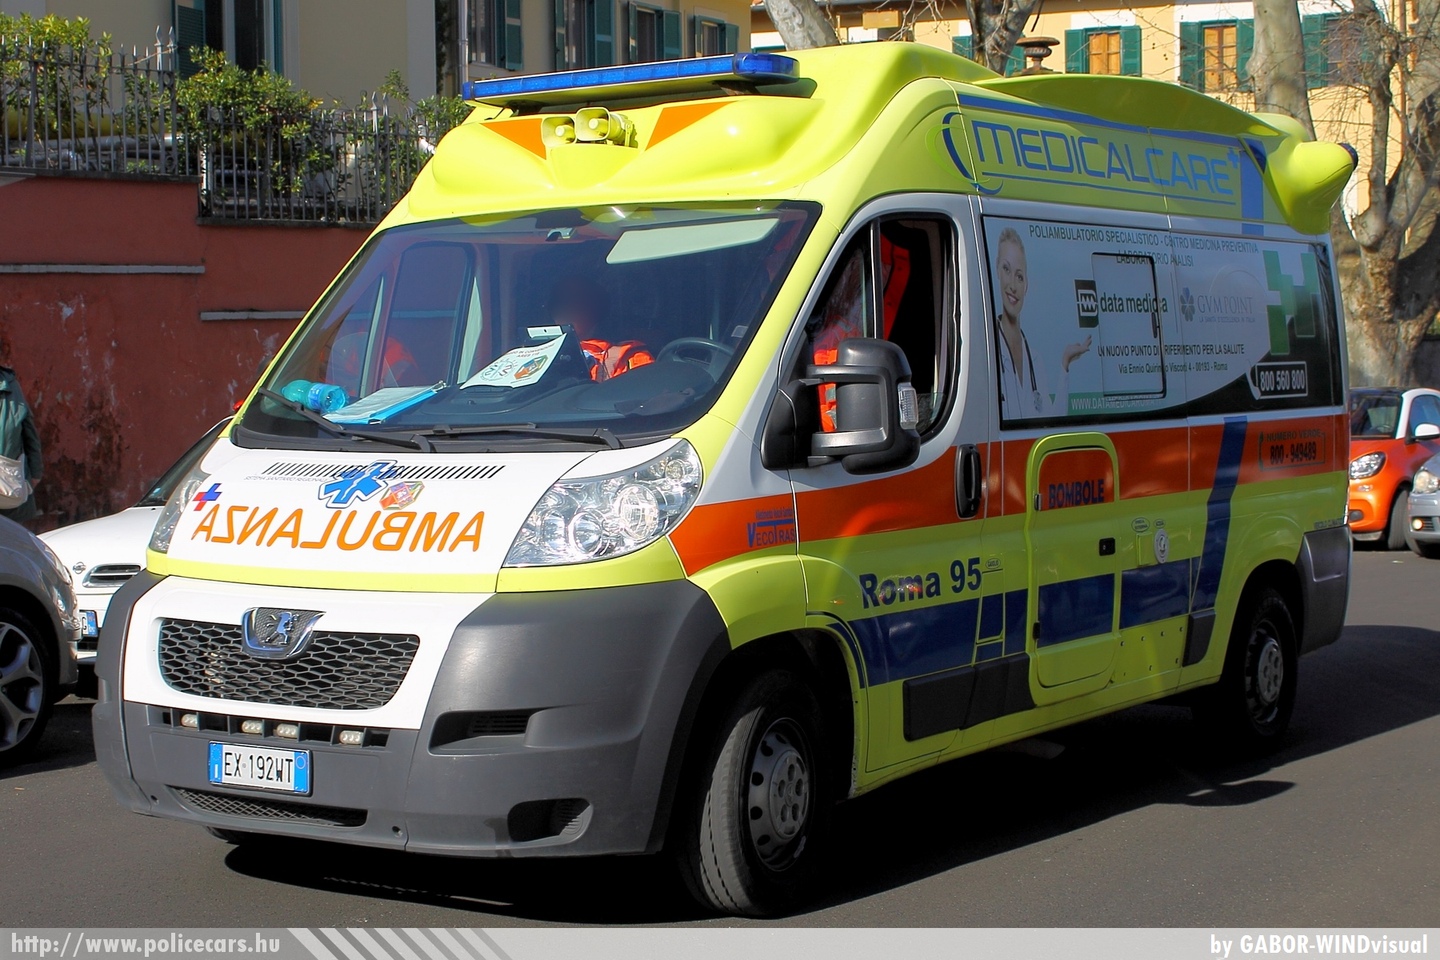 Peugeot Boxer, fotó: GABOR-WINDvisual
Keywords: mentő mentőautó olasz Olaszország ambulance Italy italian